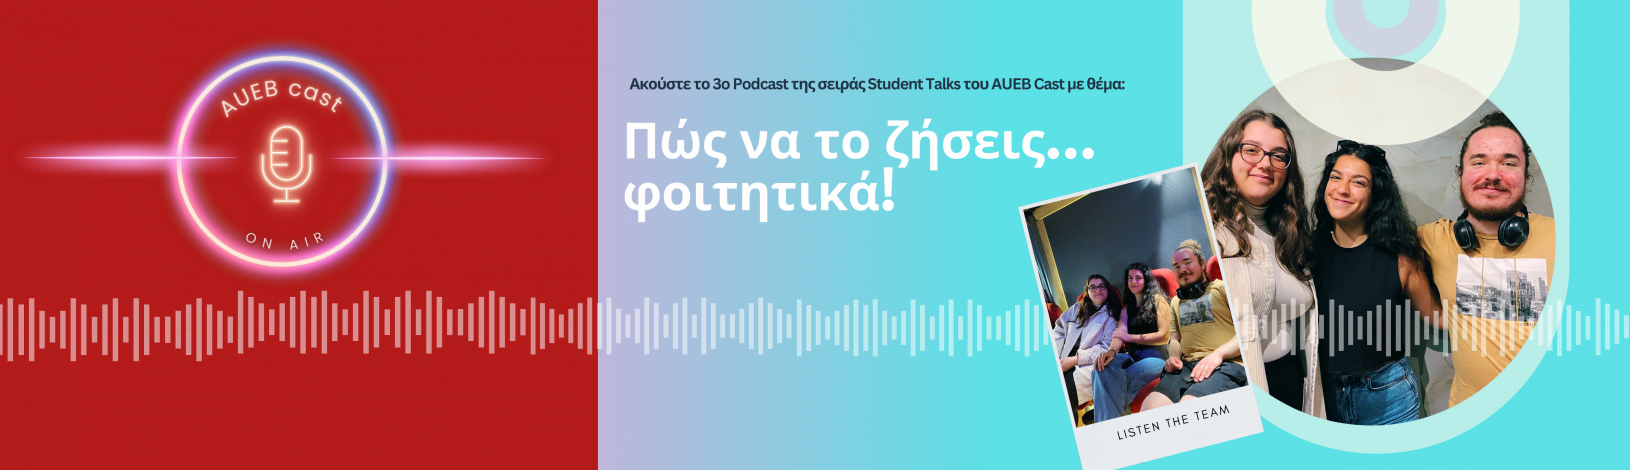 Ακούστε το 3o Podcast της σειράς Student Talks του AUEB Cast με θέμα: Πώς να το ζήσεις…φοιτητικά!